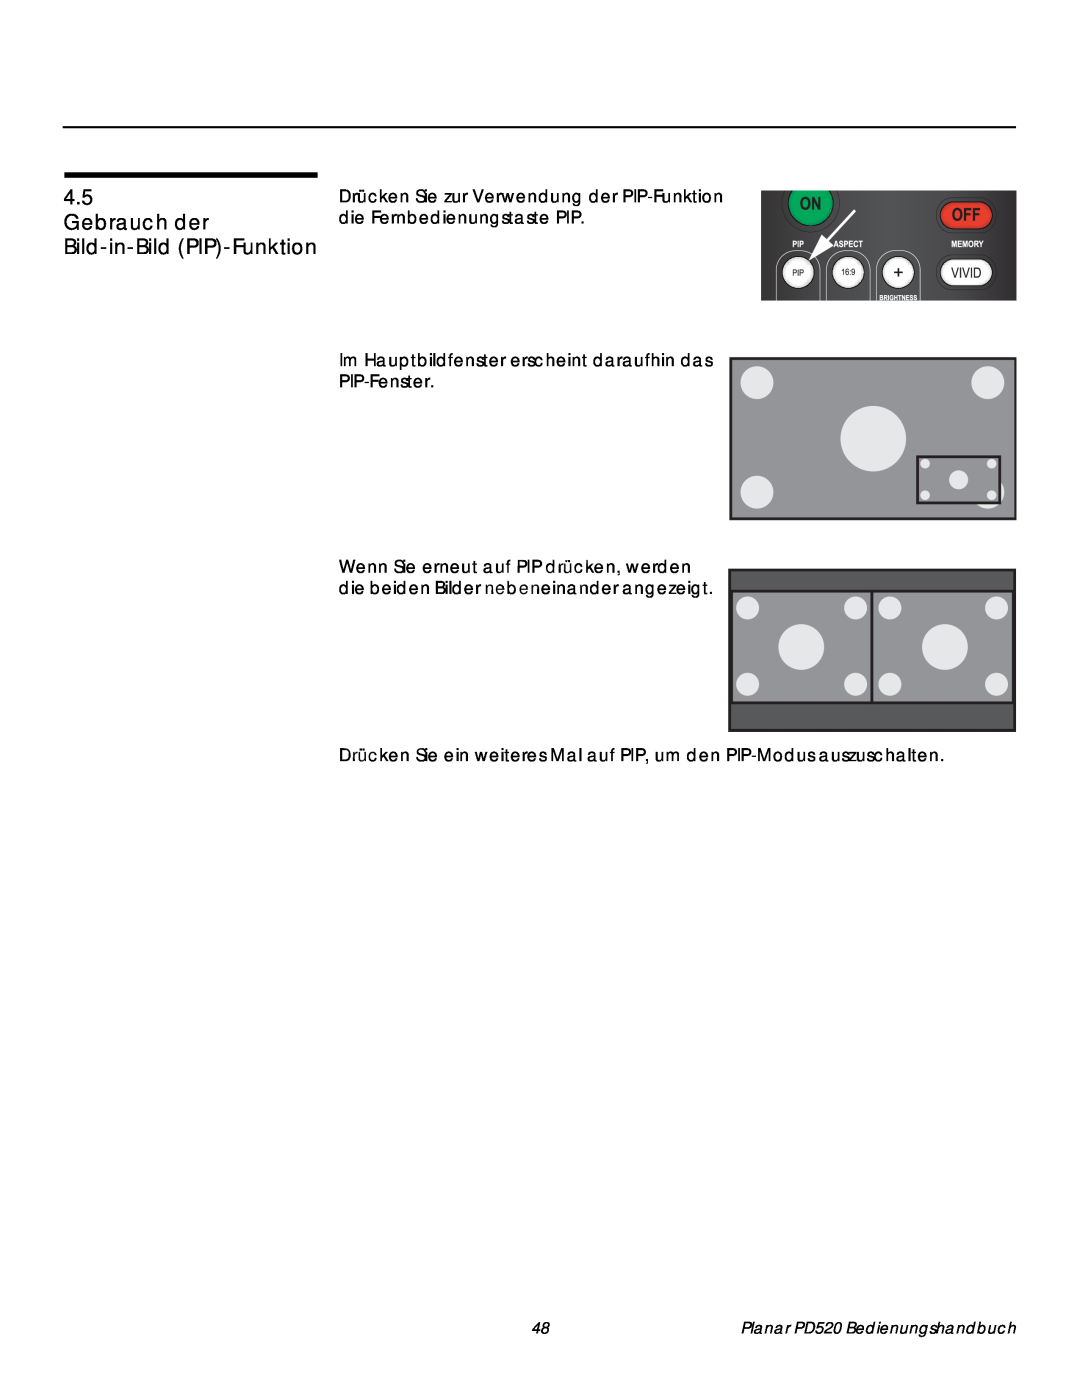 Planar PD520 manual Gebrauch der Bild-in-Bild PIP-Funktion, Press the 